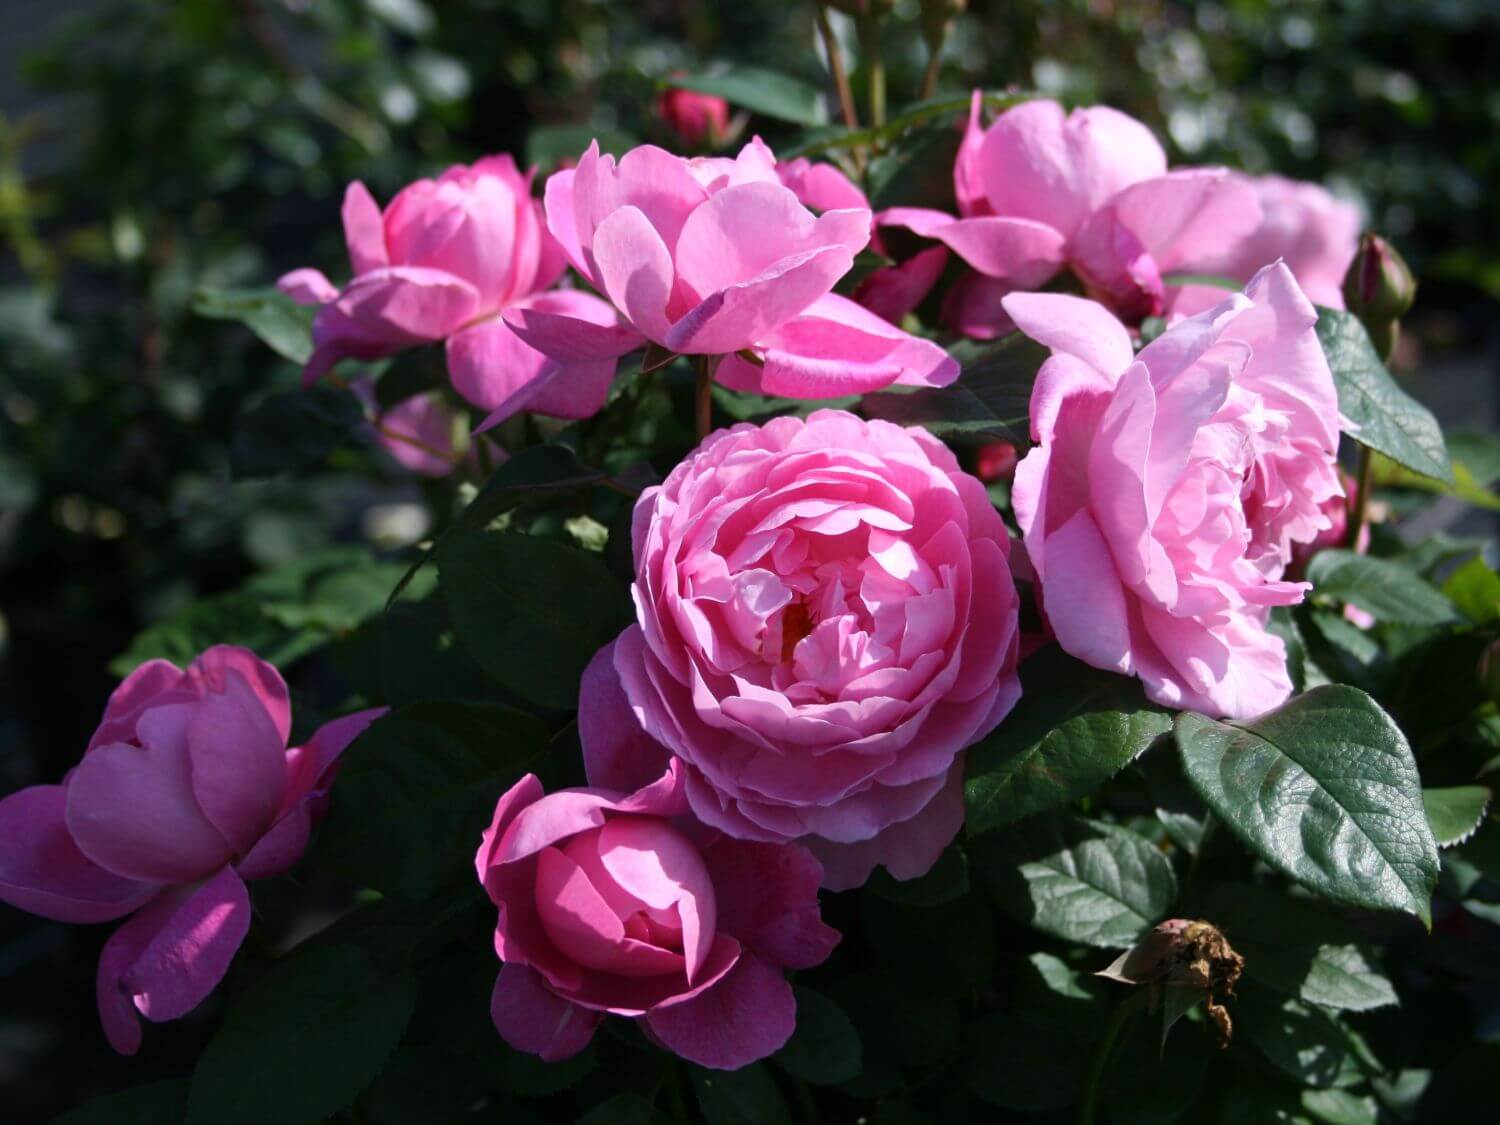 Роза розмари харкнесс — особенности, агротехнические мероприятия